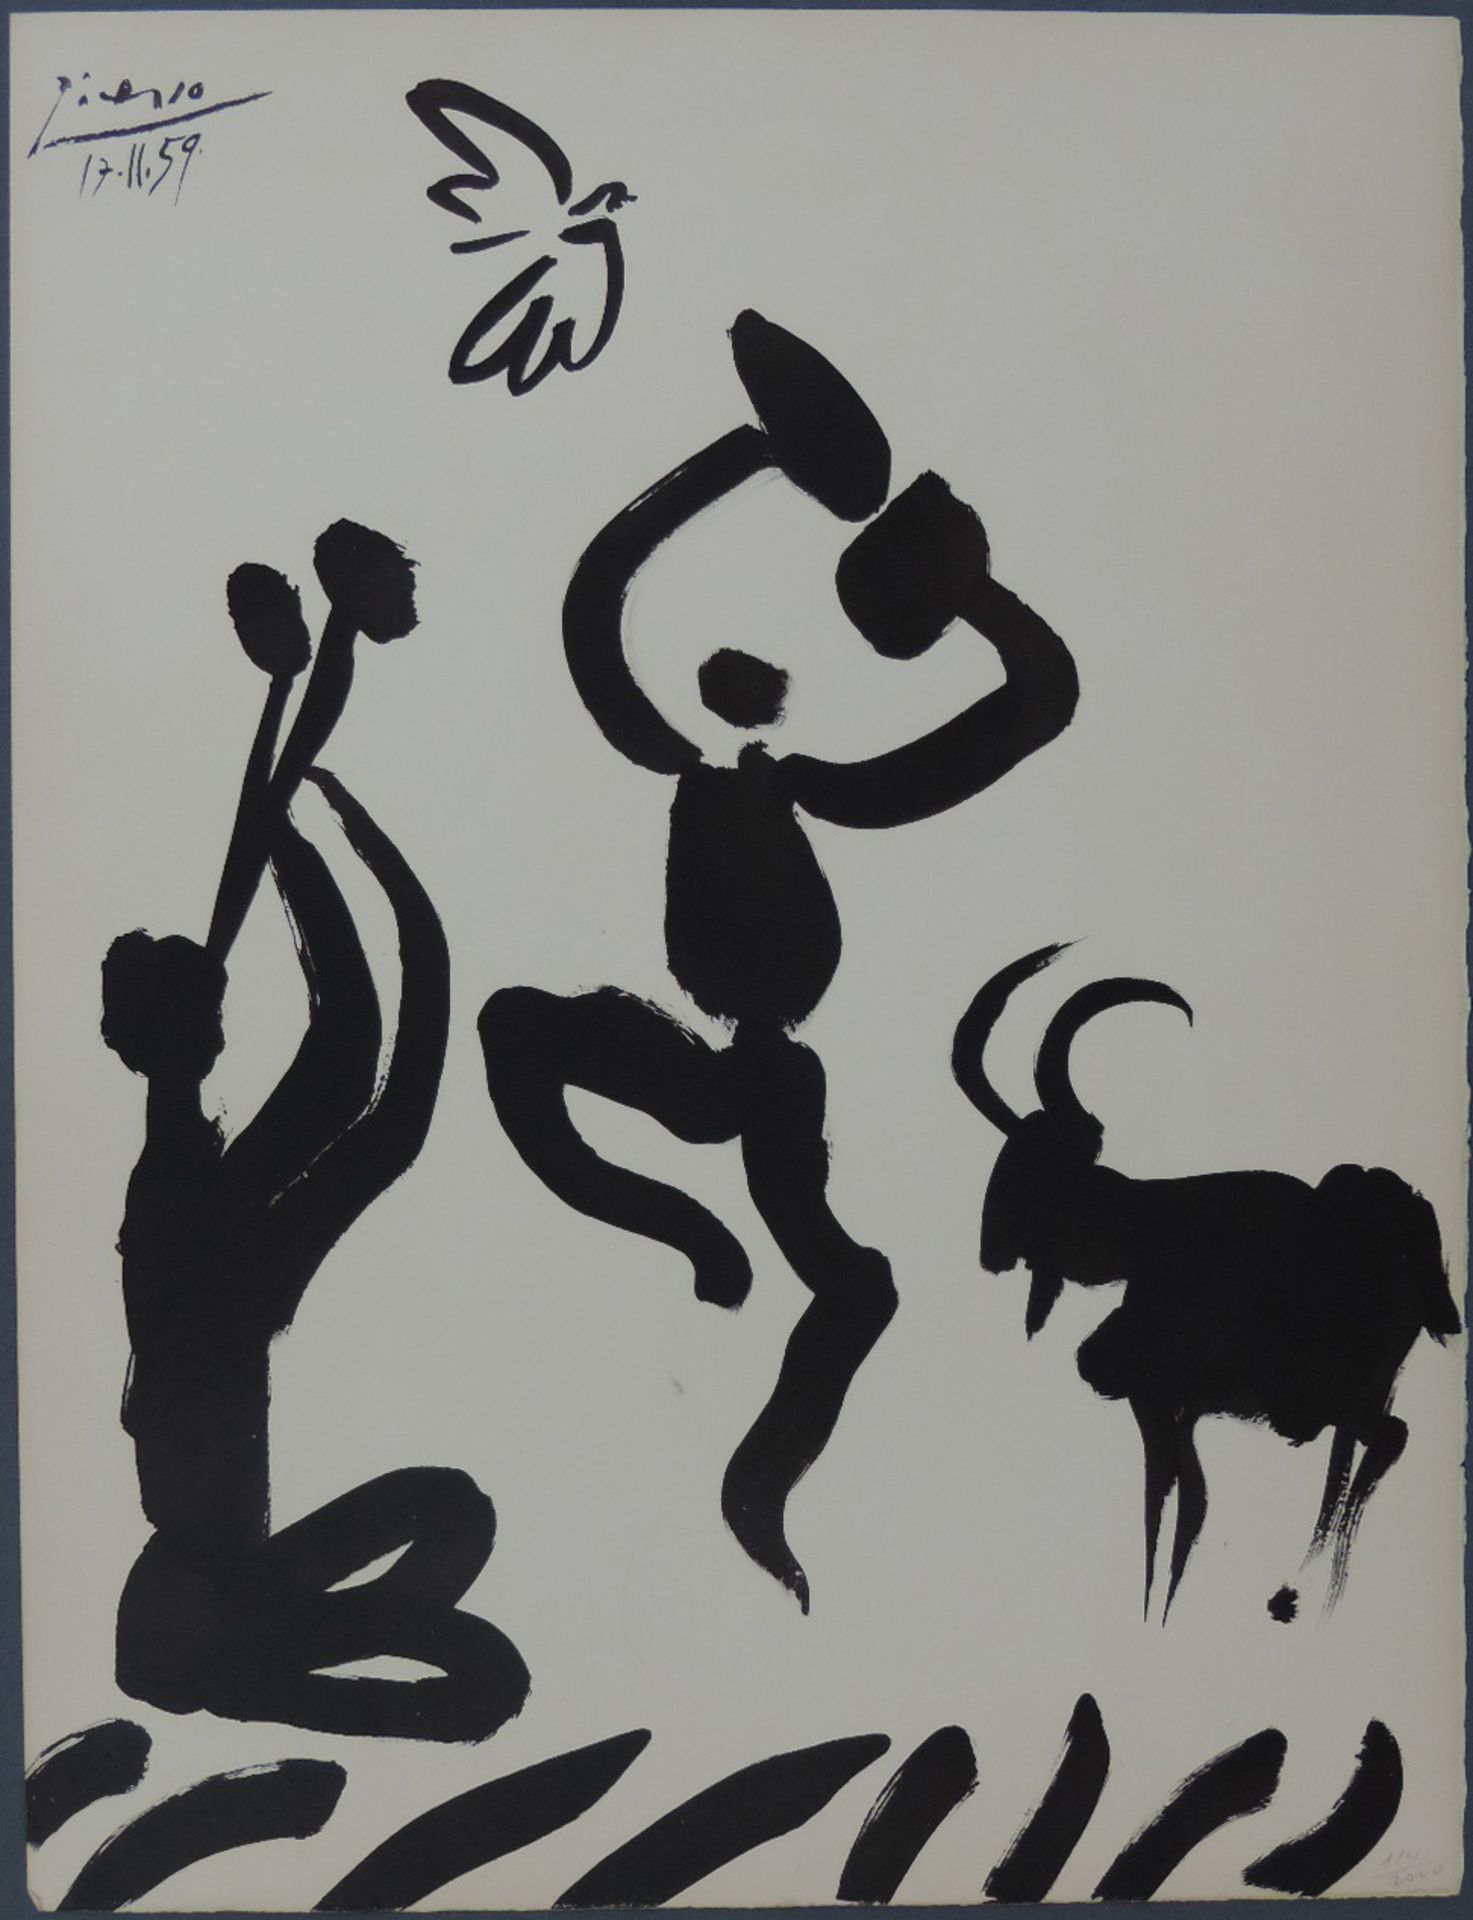 Pablo PICASSO (1881 - 1973). La Danse du Berger, 1959. Der Tanz des Schäfers.66,7 x 50,3 cm; (26,2 x